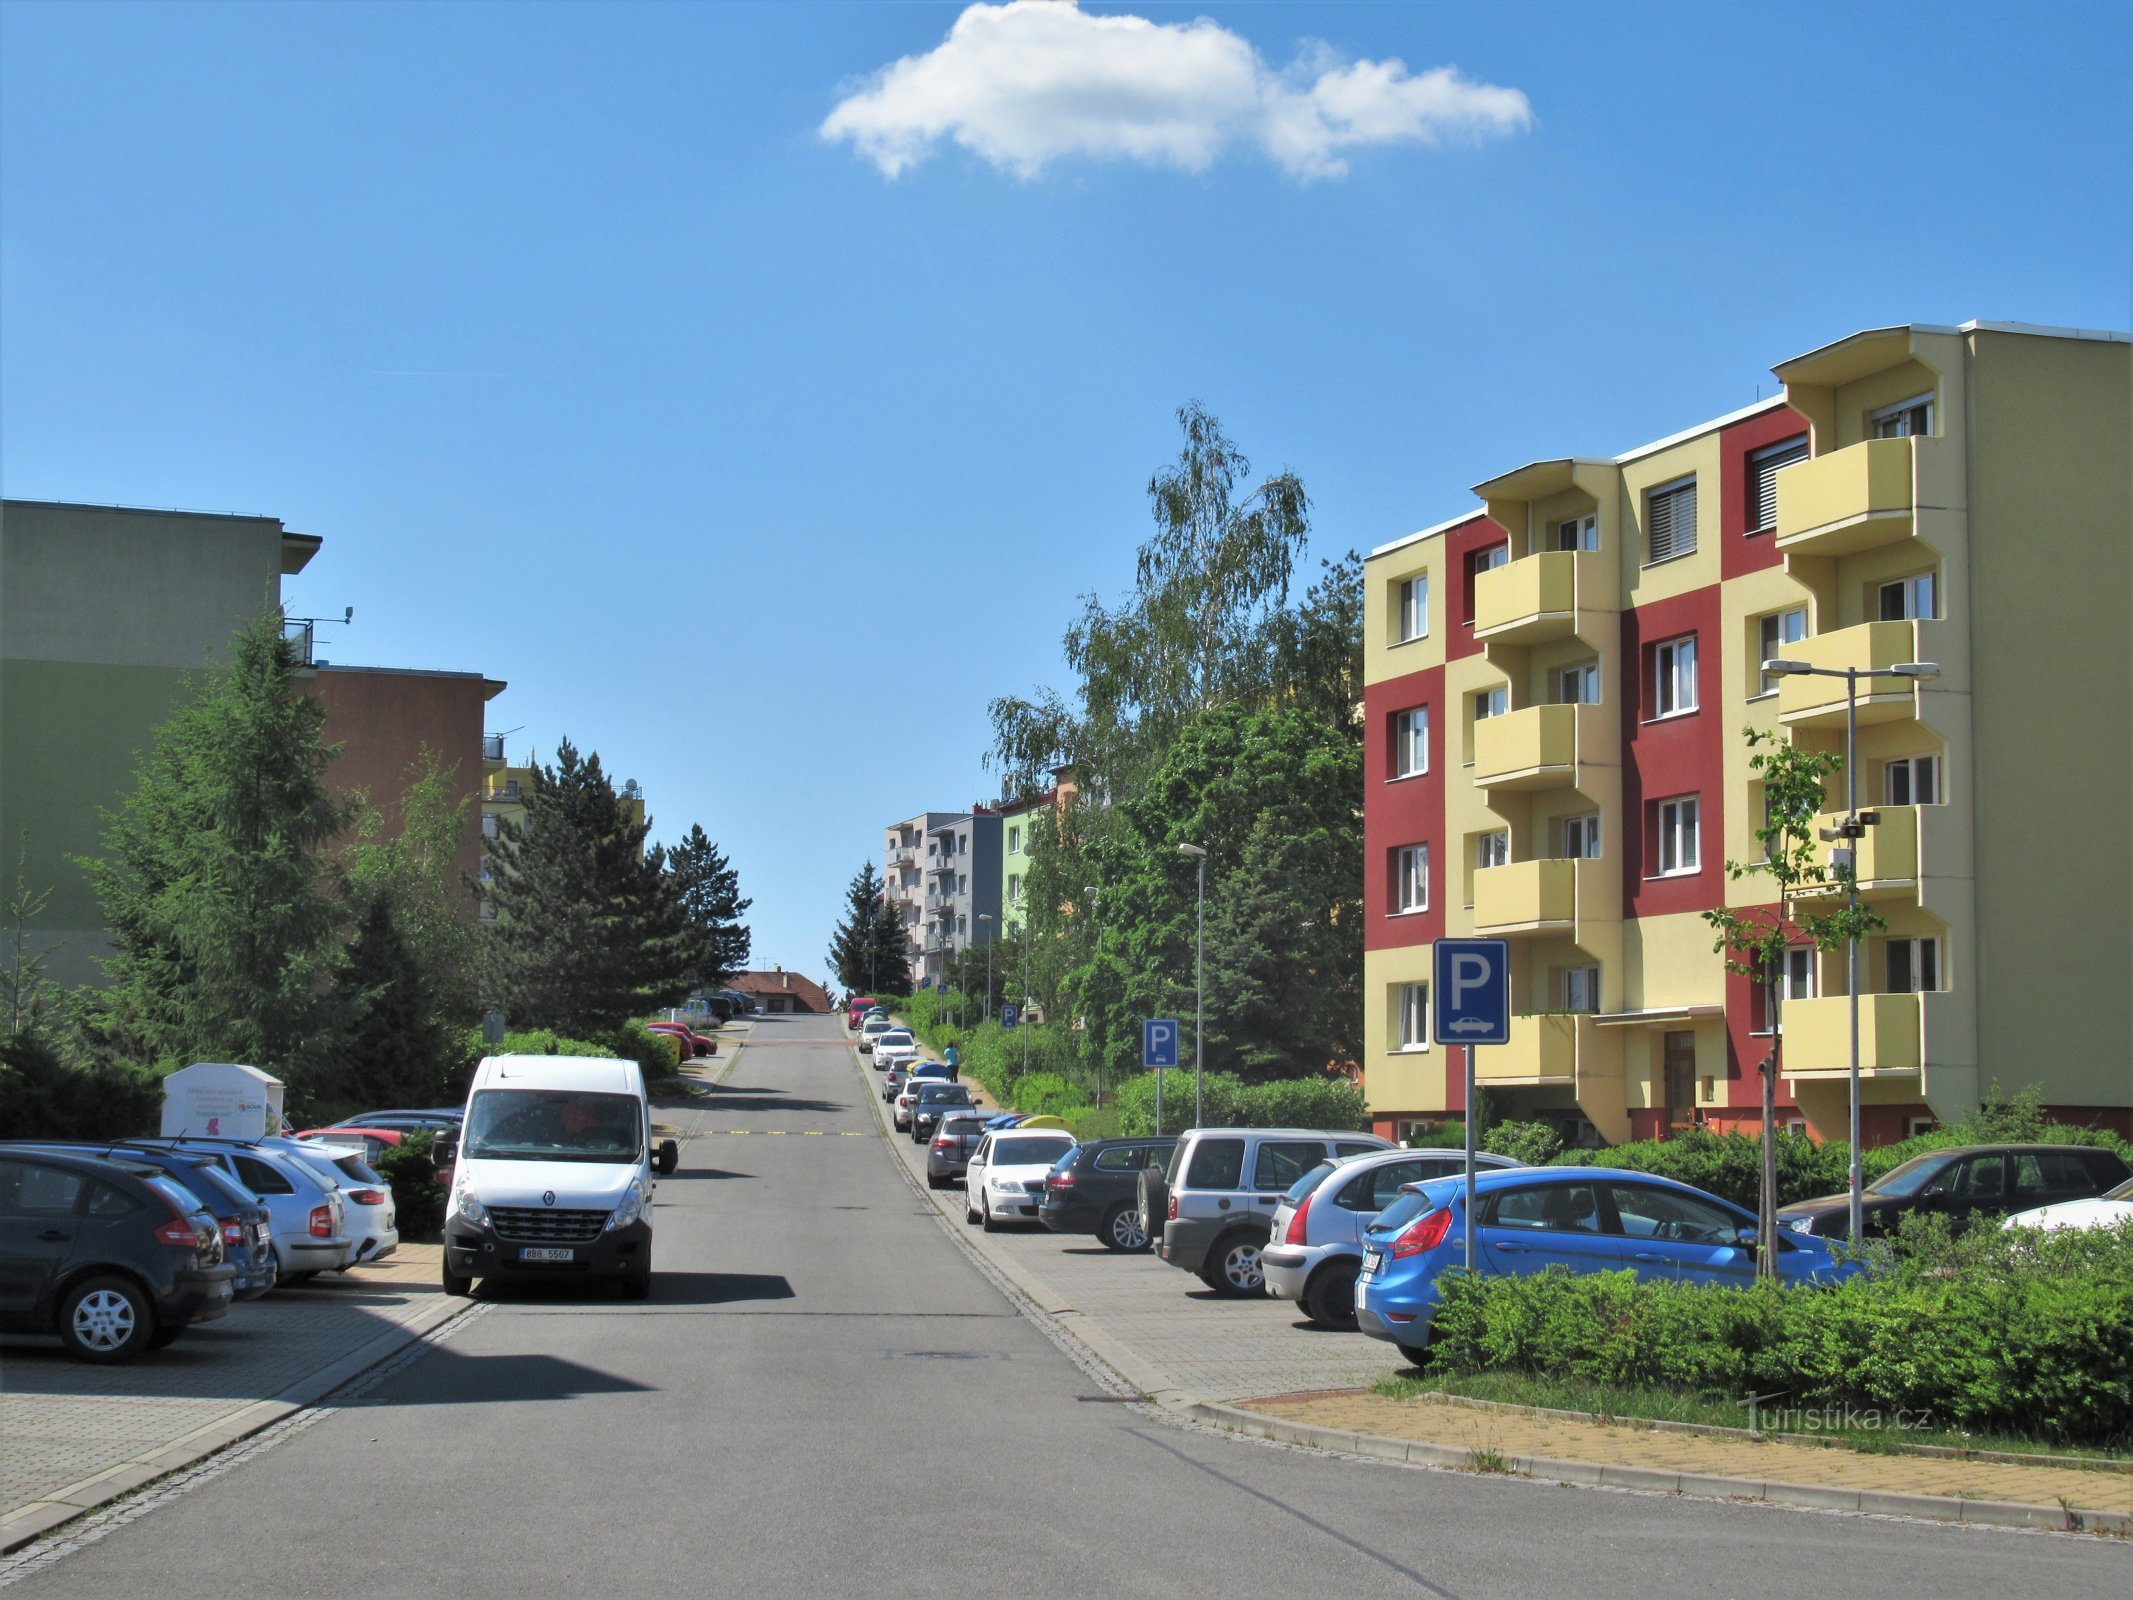 Kopánky-gaden fører til U koupaliště-krydset